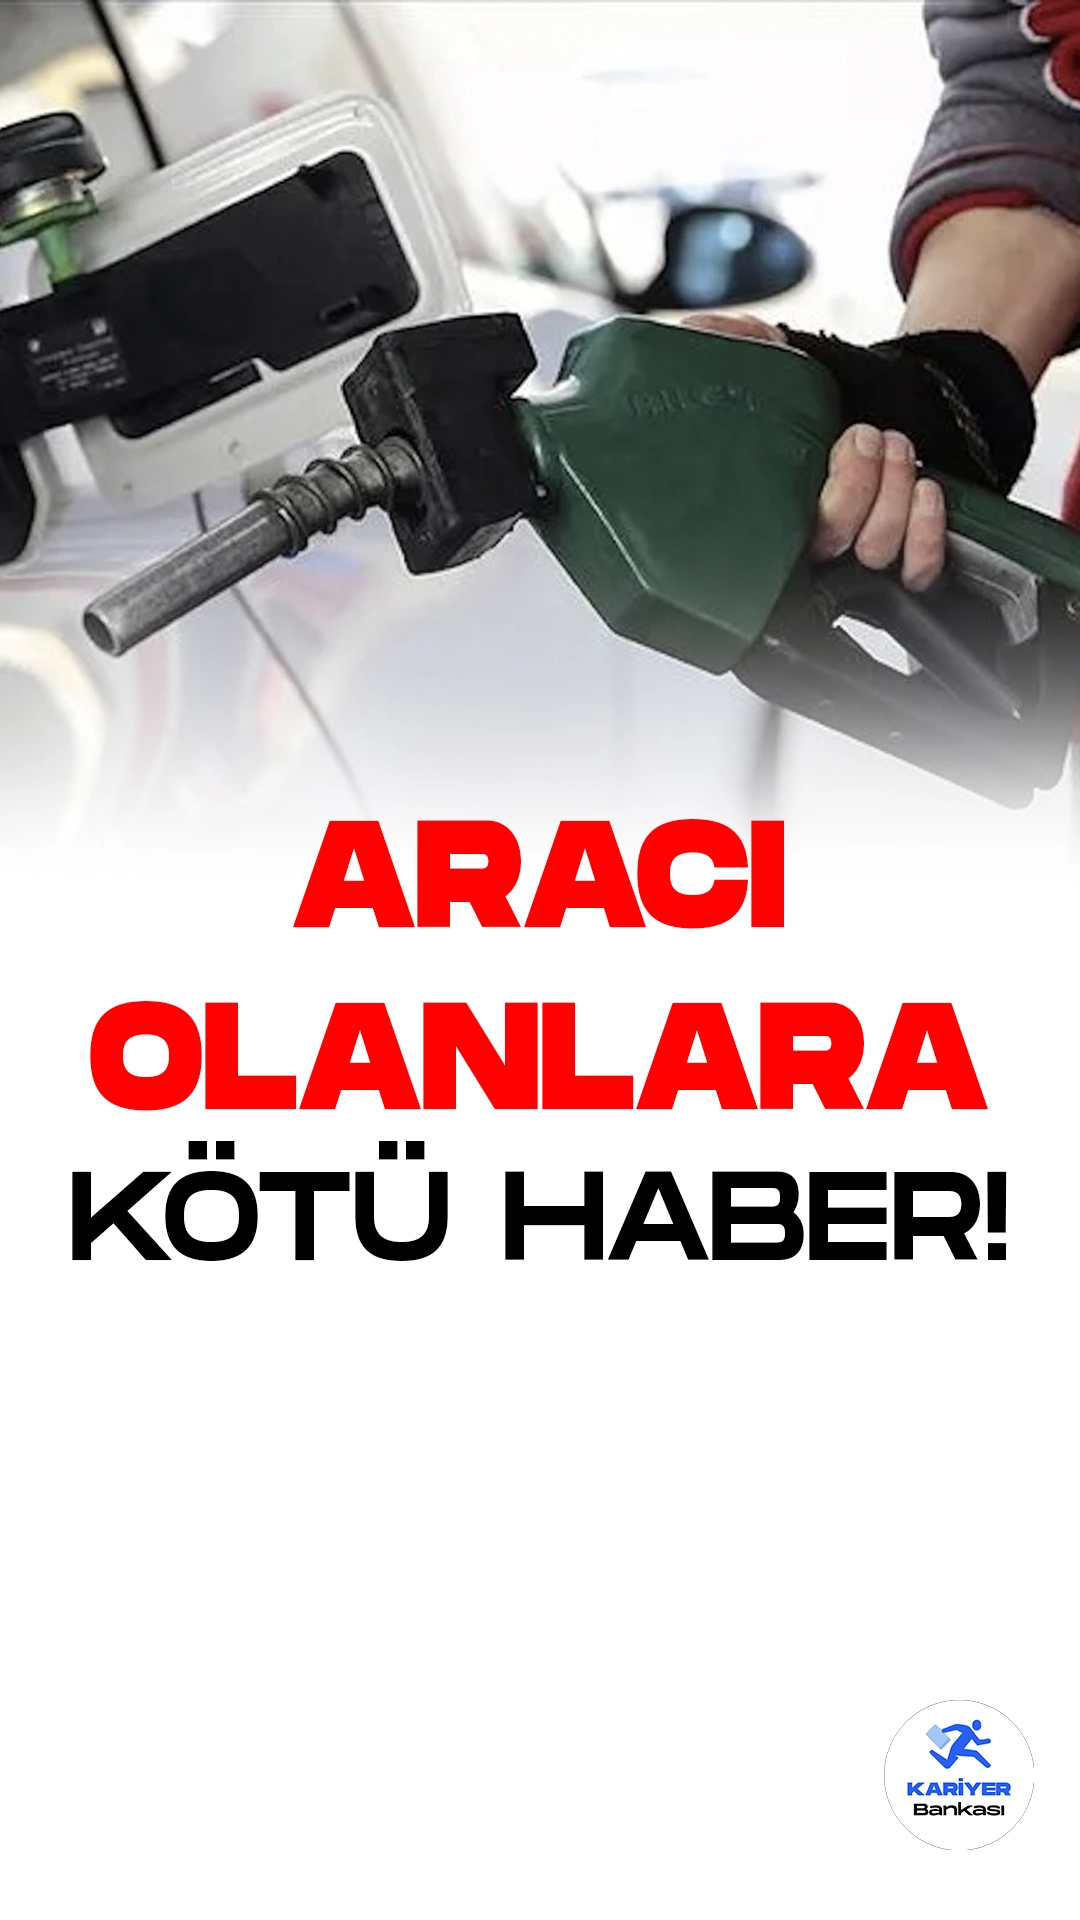 Benzine Zam Geldi!Dünya genelindeki akaryakıt fiyatlarındaki süregelen yükseliş, Türkiye'nin akaryakıt sektörünü de etkisi altına almaya devam ediyor. Dün motorin fiyatlarında yaşanan artışın ardından, bugün benzin fiyatlarında da artış gerçekleşti.